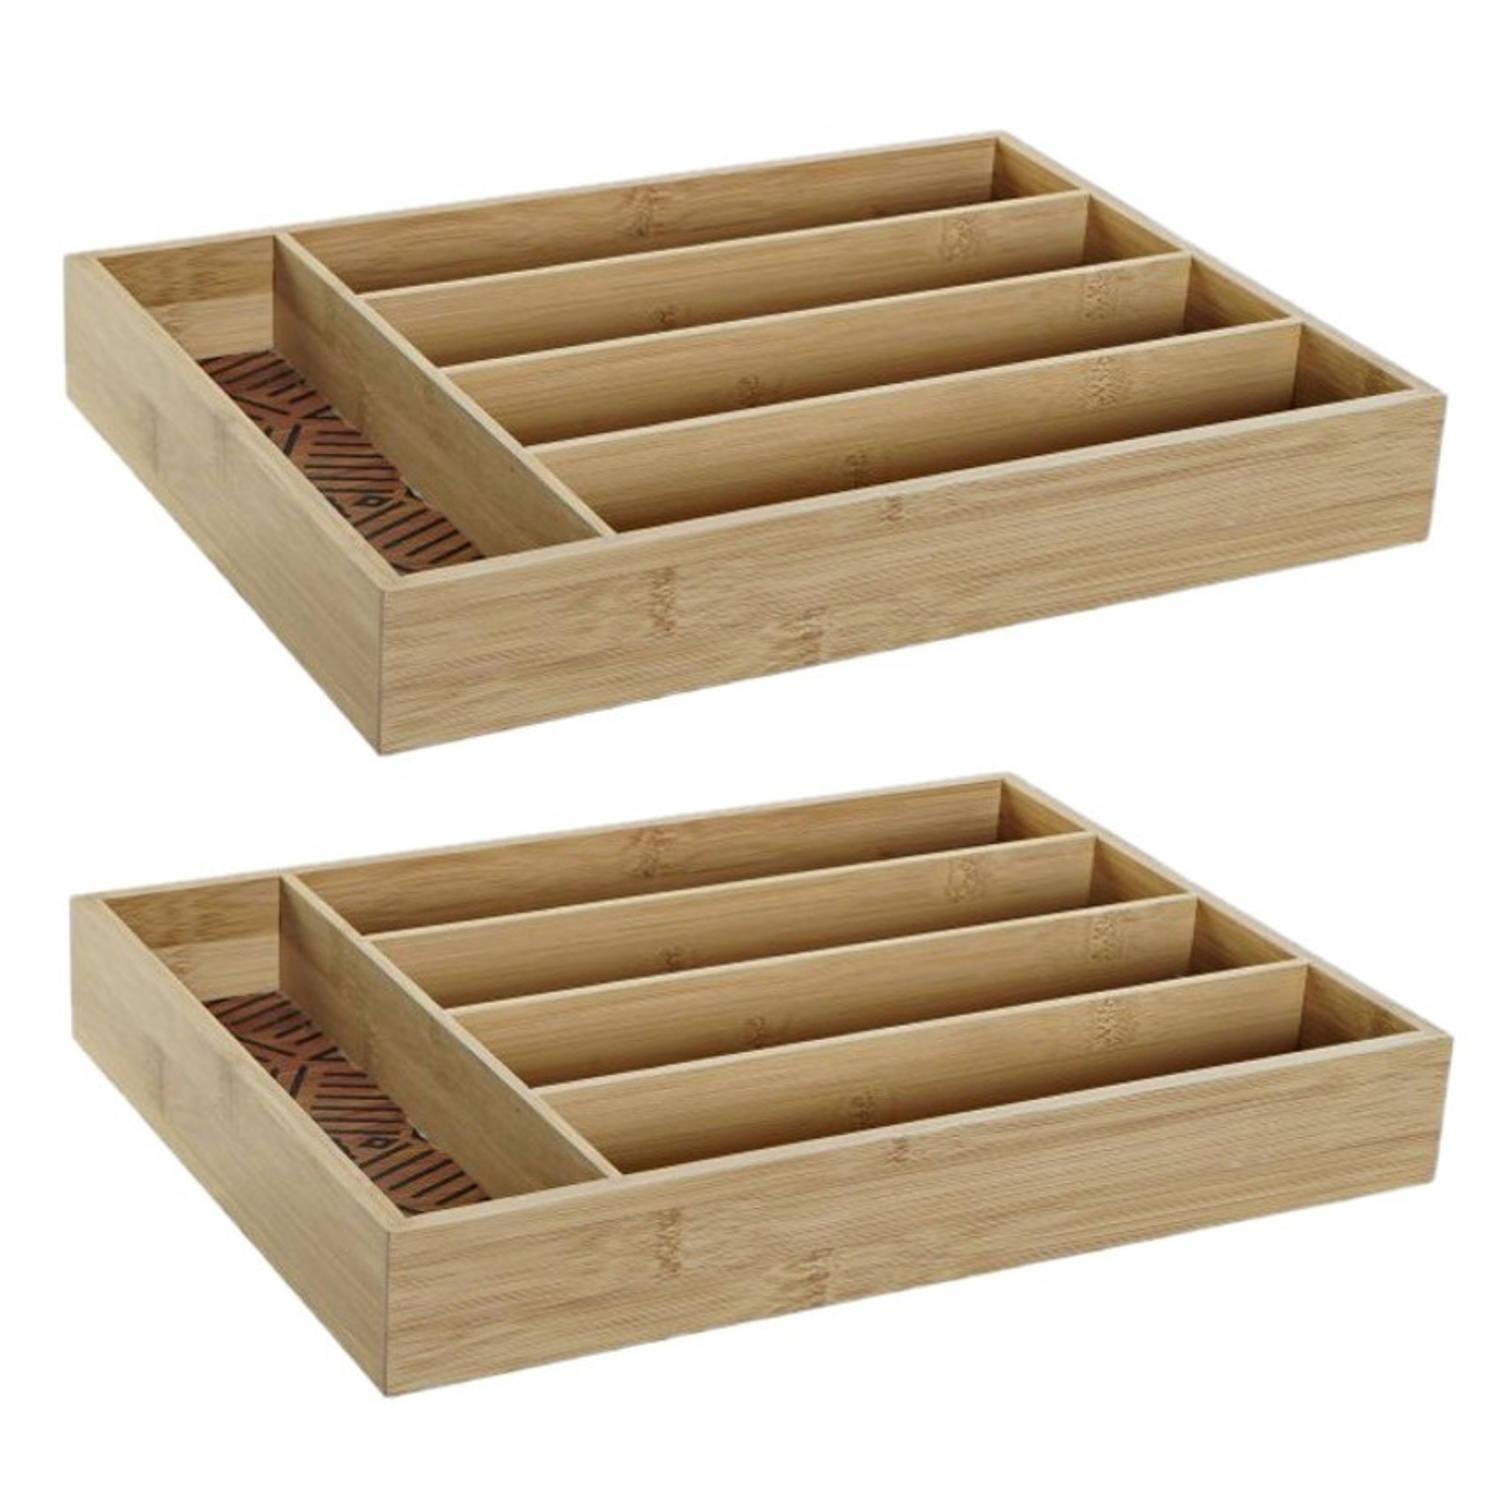 2x stuks bamboe houten bestekbakken/lades met patroontje in de vakjes 35.5 x 25.5 x 5 cm - Bestekbakken